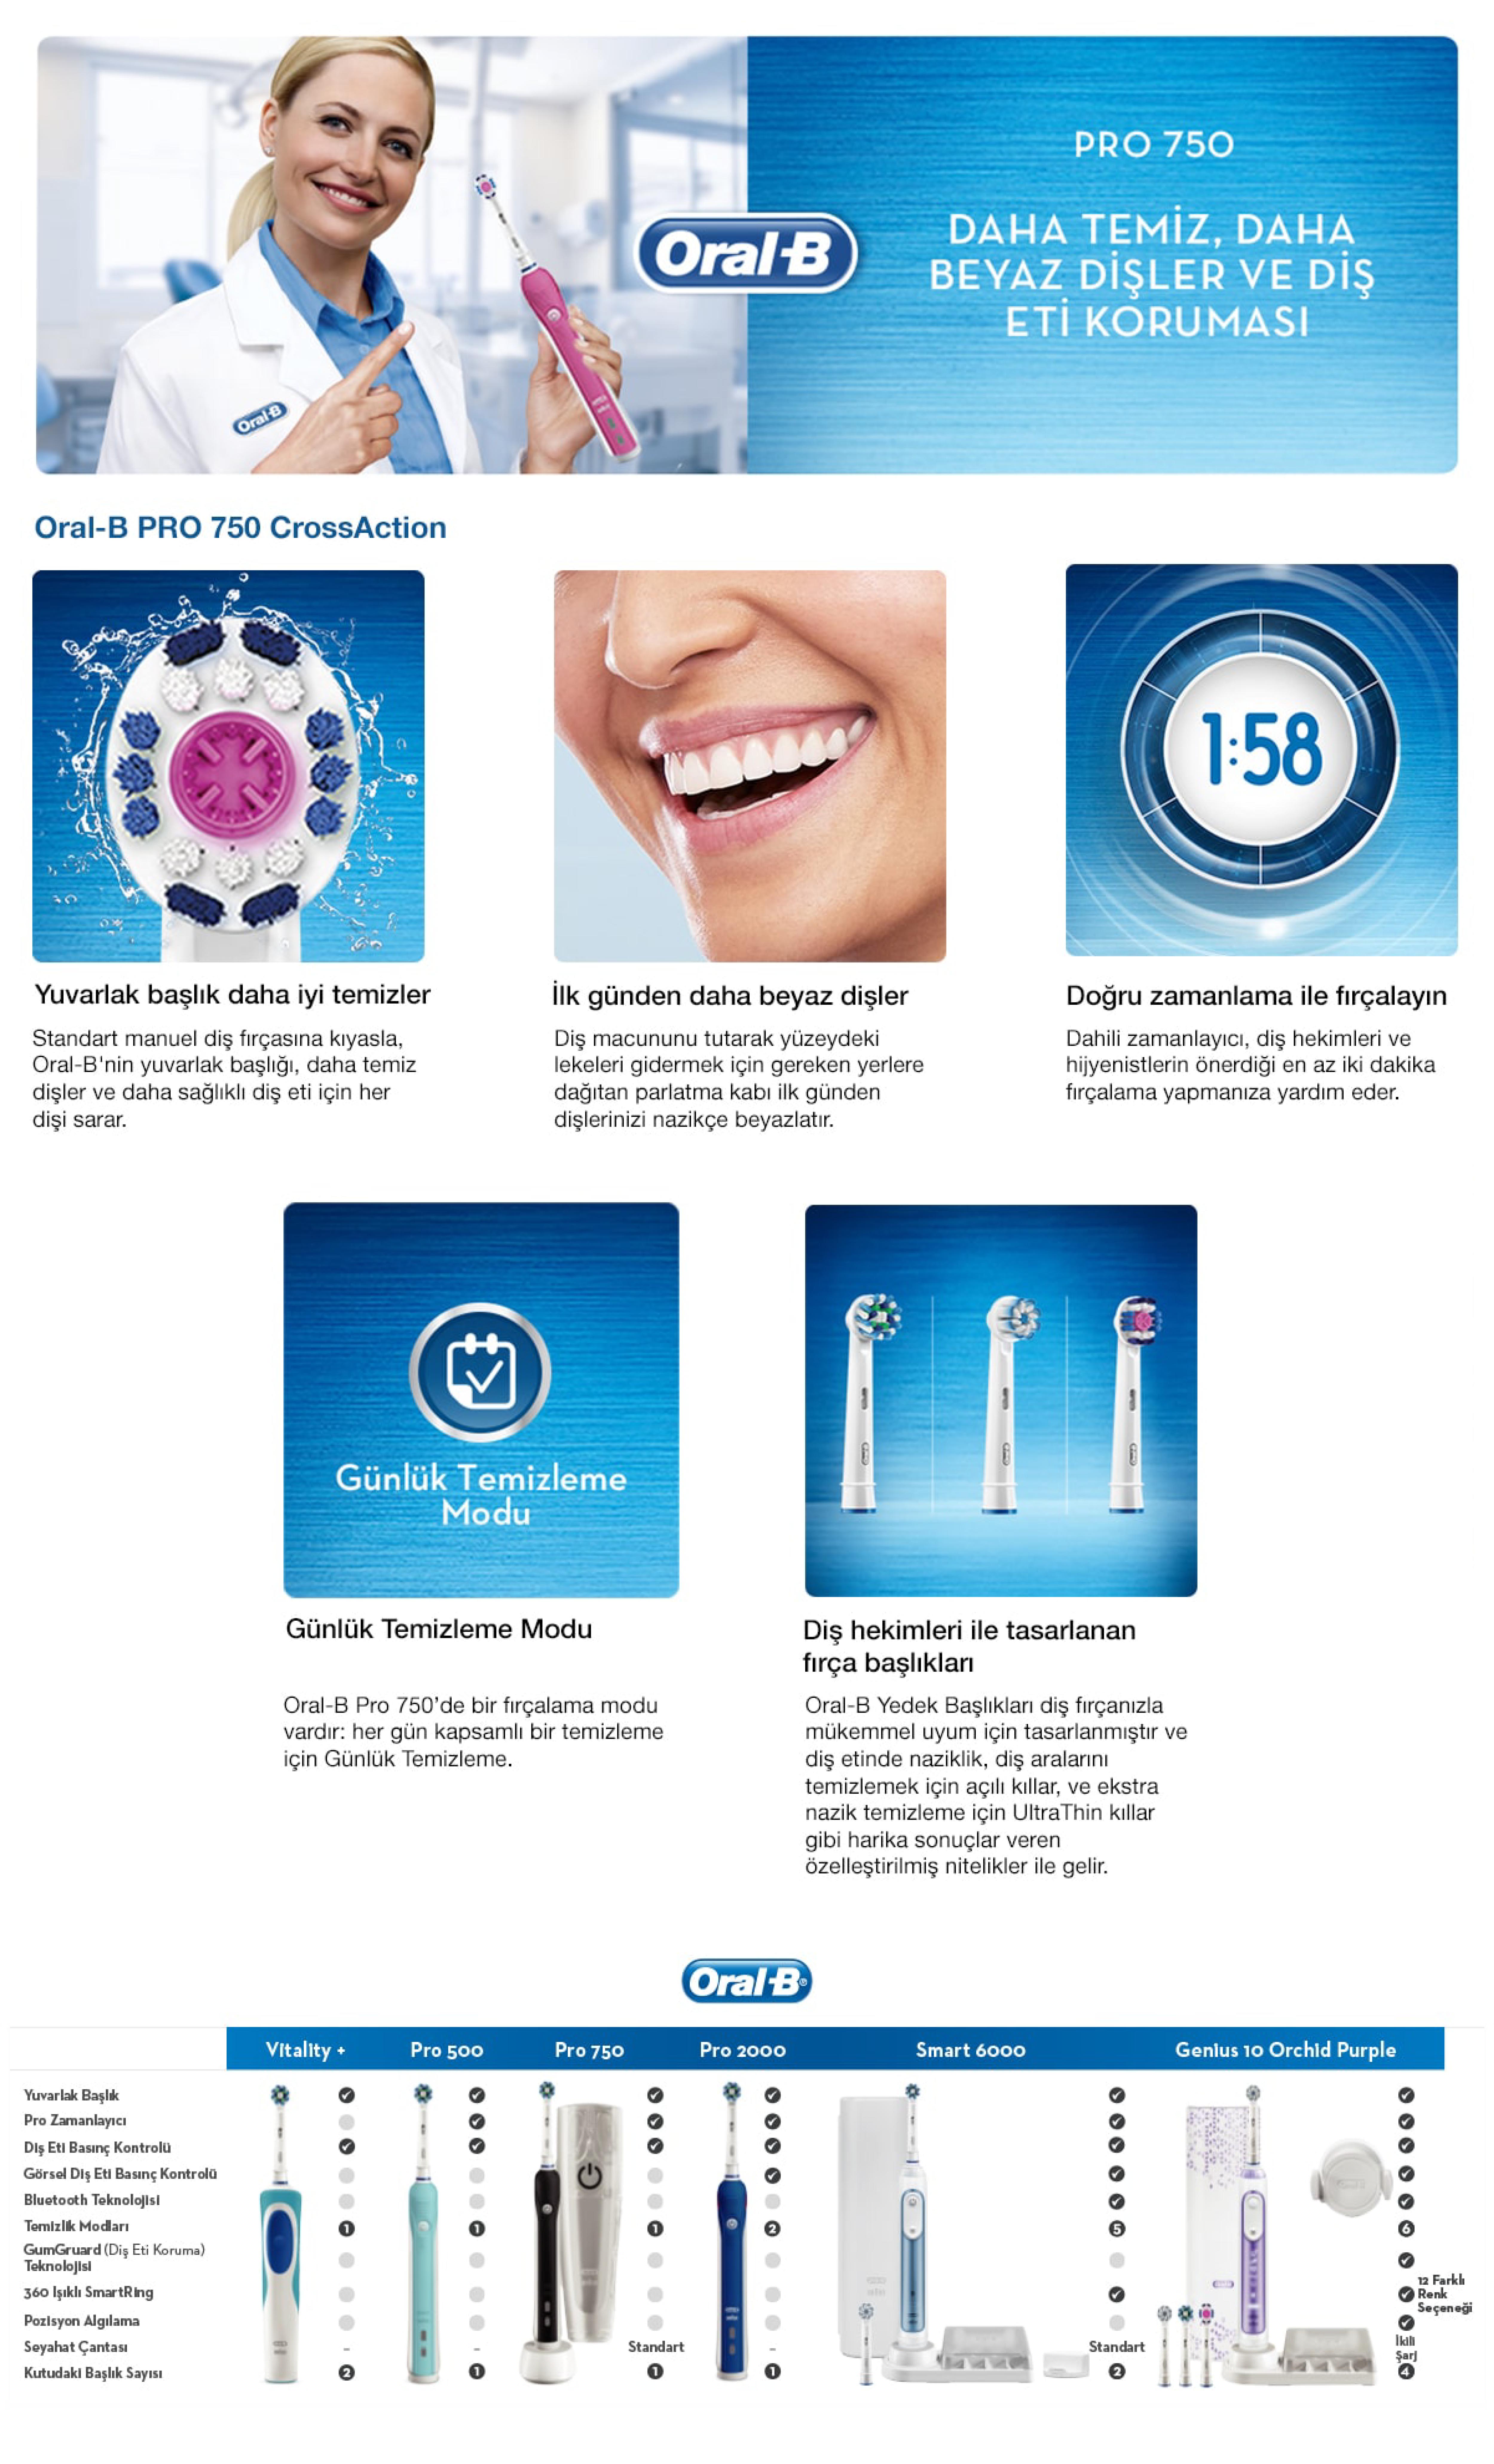 Oral-B Pro 750 Şarj Edilebilir Diş Fırçası Cross Action Pembe + Seyahat Kabı Hediyeli.jpg (1.88 MB)